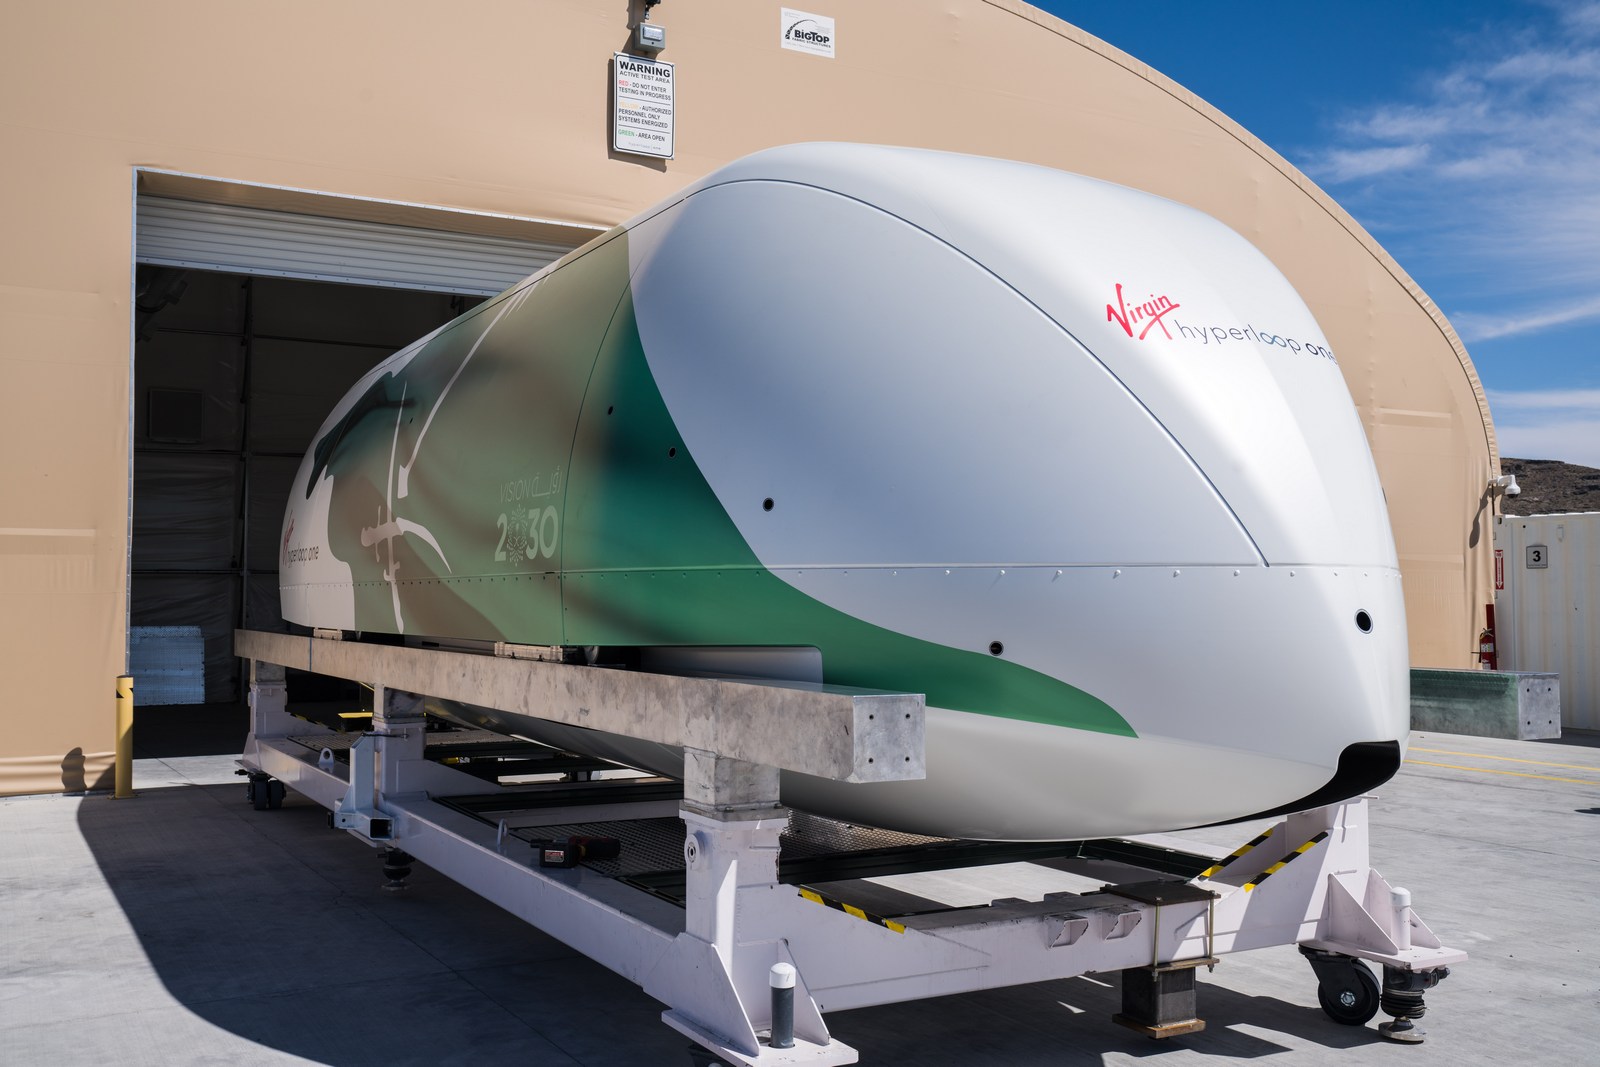 La nouvelle version de la capsule de Virgin Hyperloop One aux couleurs de l’Arabie saoudite. © Virgin Hyperloop One